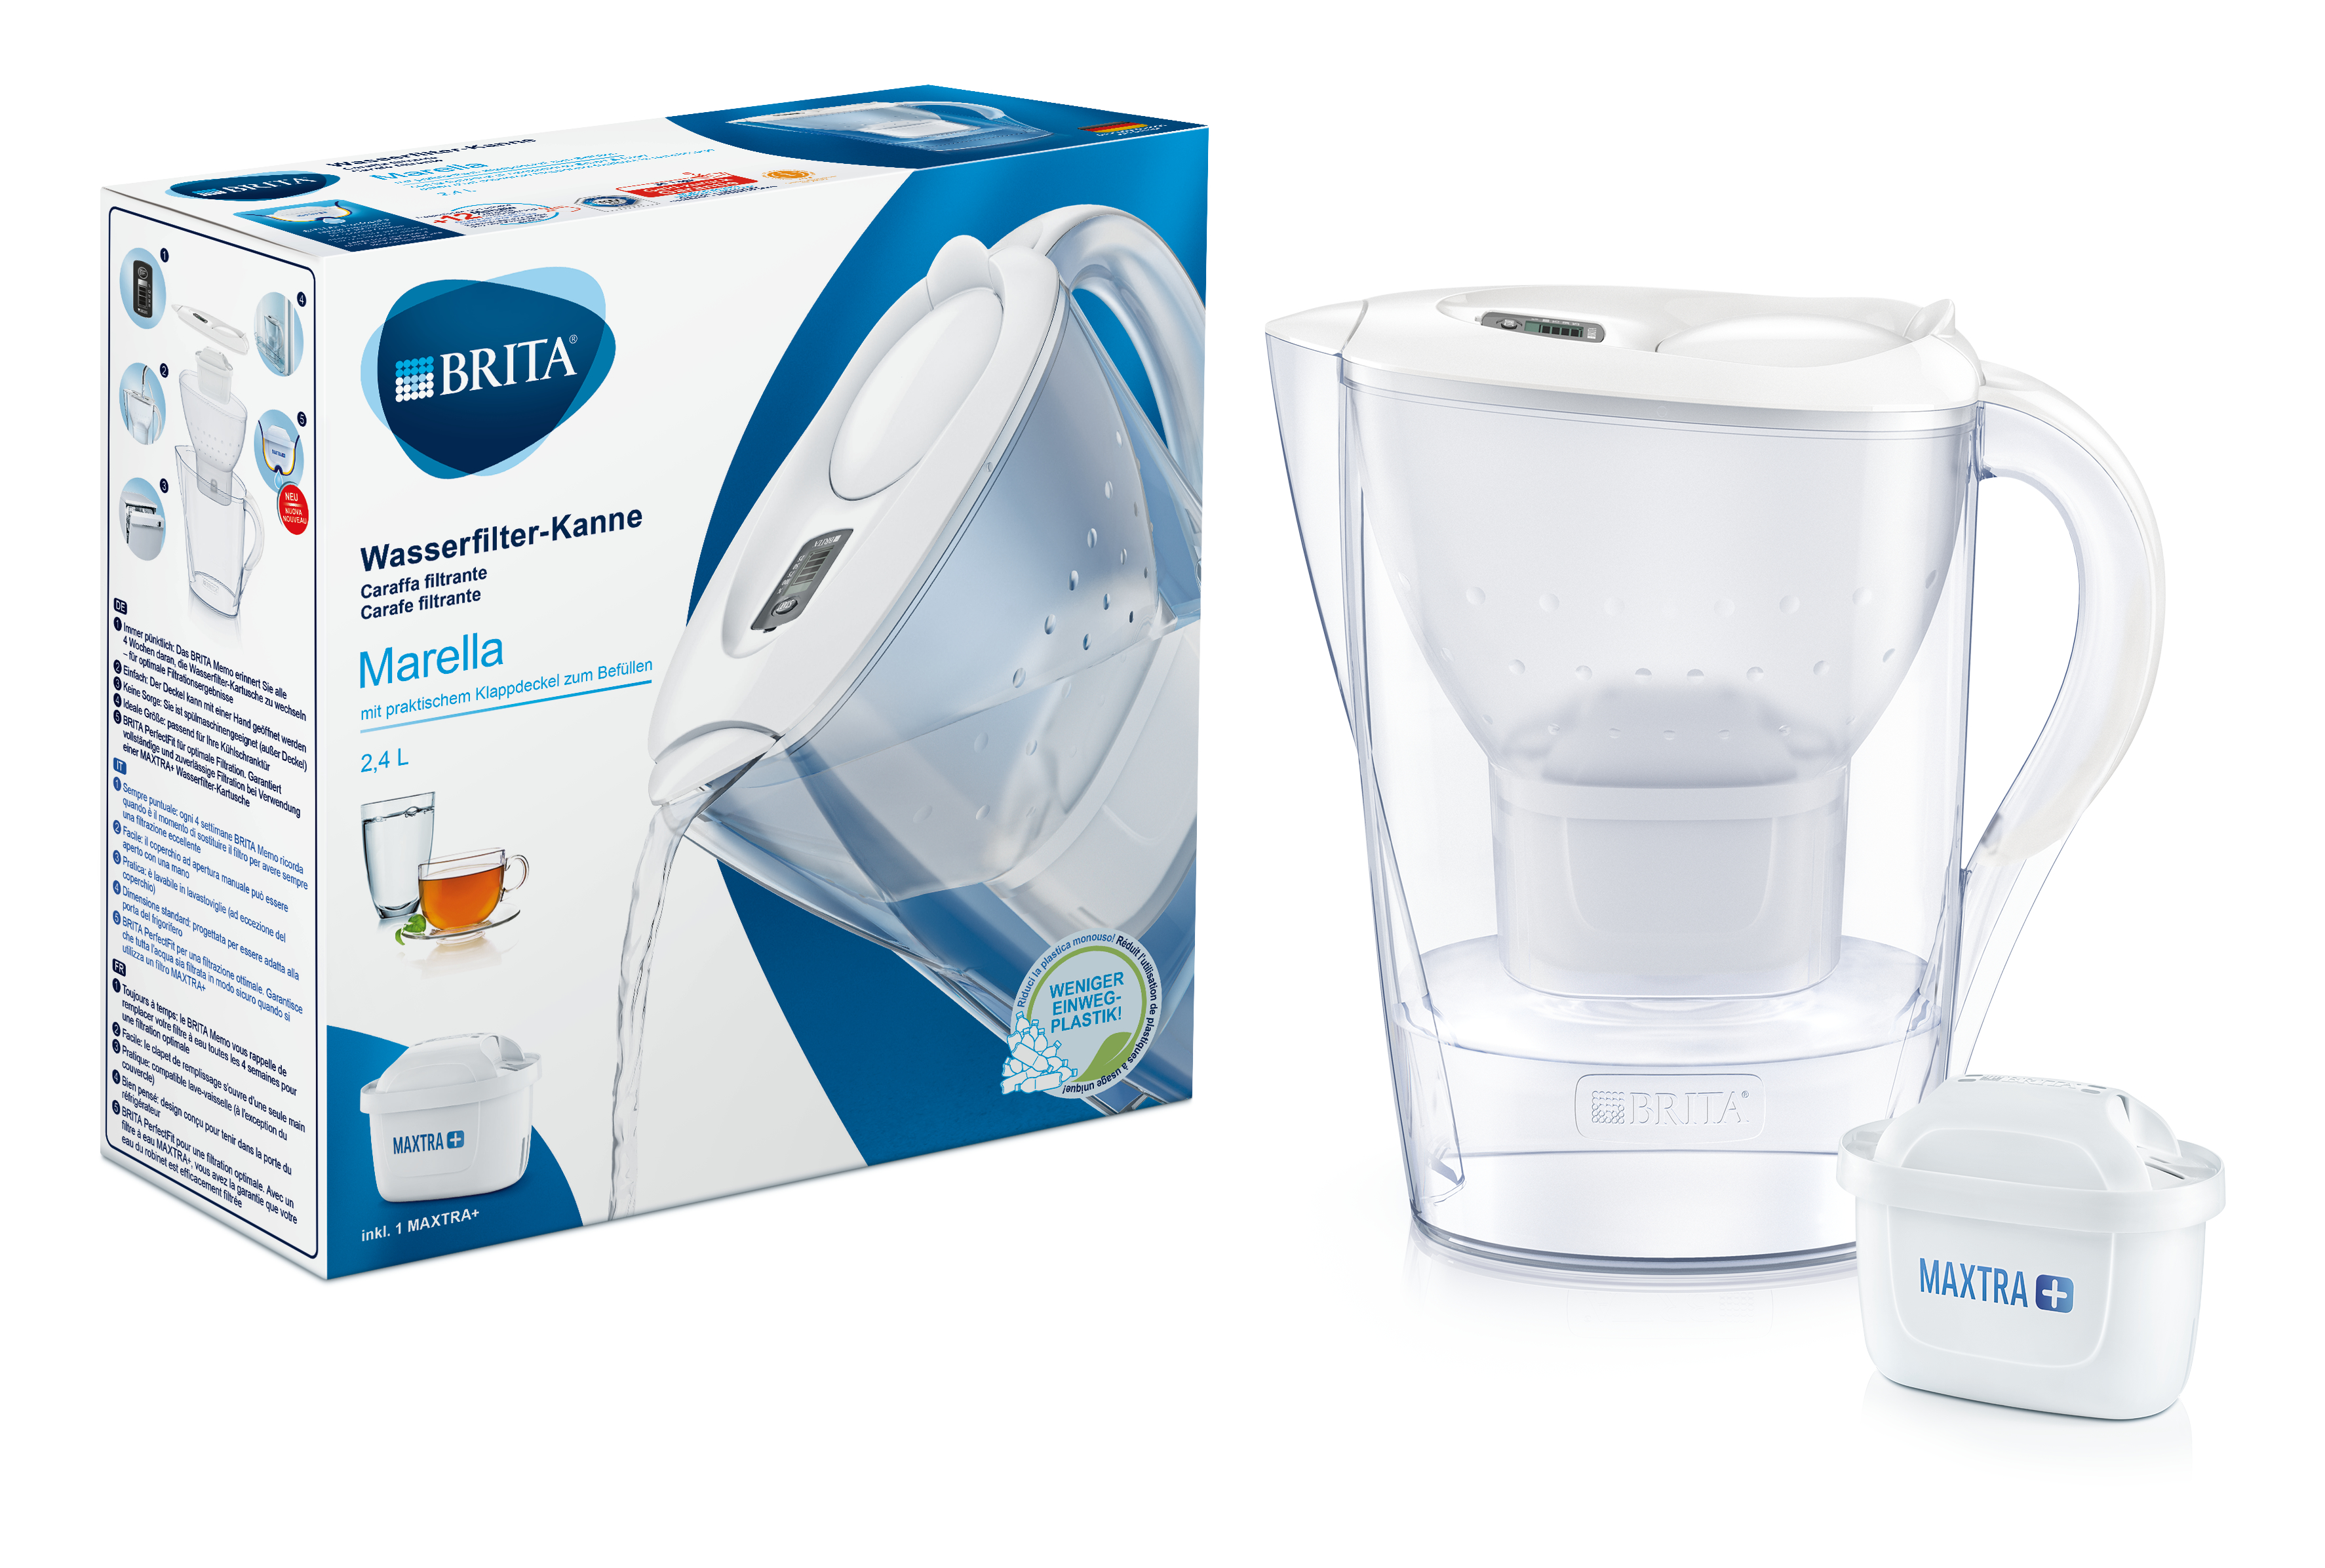 BRITA - Bottiglia filtrante per acqua vitale, 3 filtri MAXTRA+ e 1 filtro  MicroDisc in regalo - Confezione - Filtra fino a 60 litri - 1 filtro dura 1